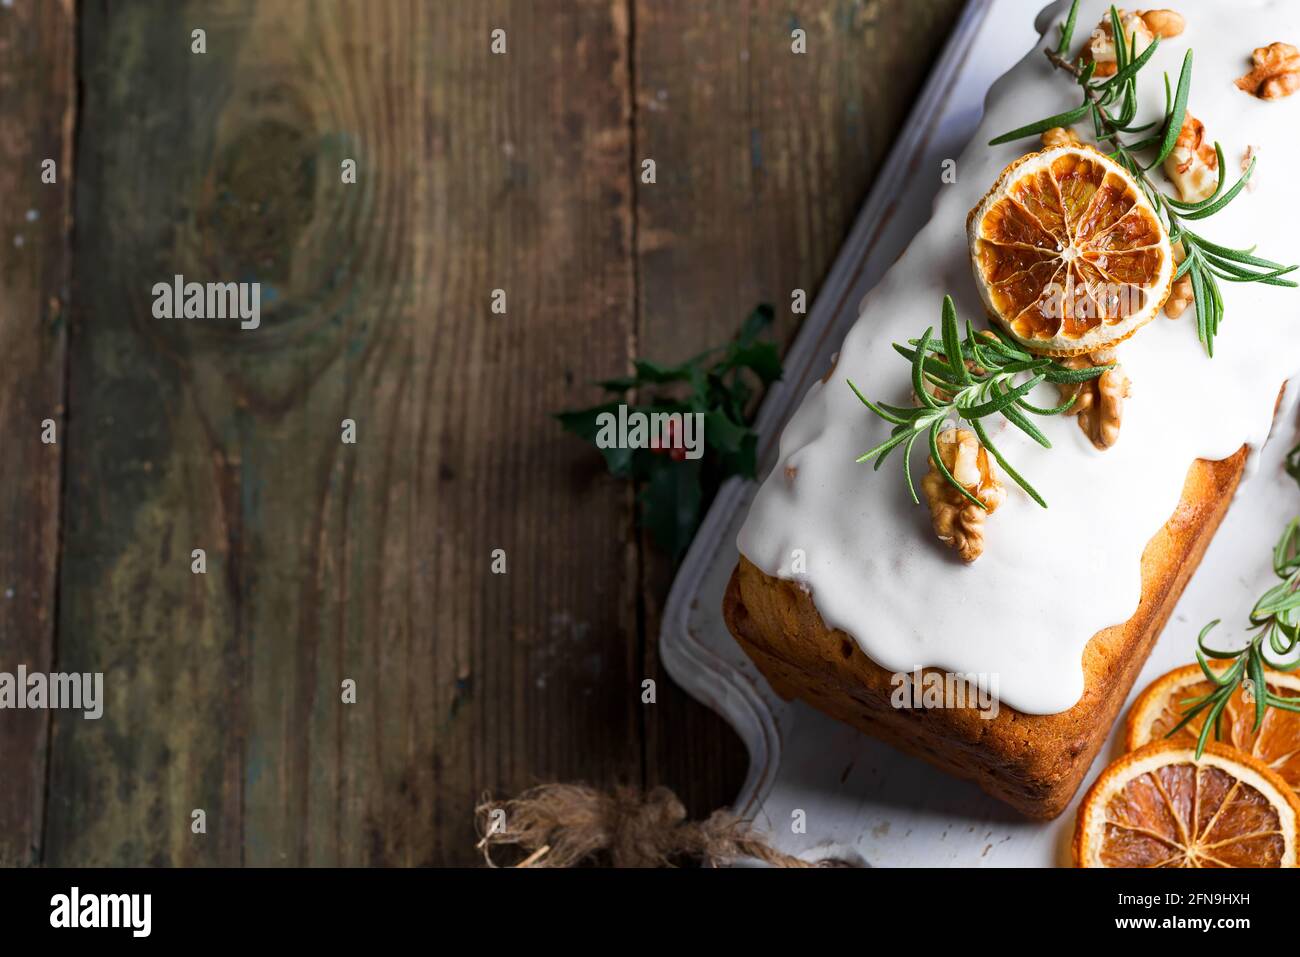 Torta di frutta spolverata con glassa, noci, melograno di noccioli e primo piano di arancio secco. Natale e inverno torta fatta in casa Foto Stock